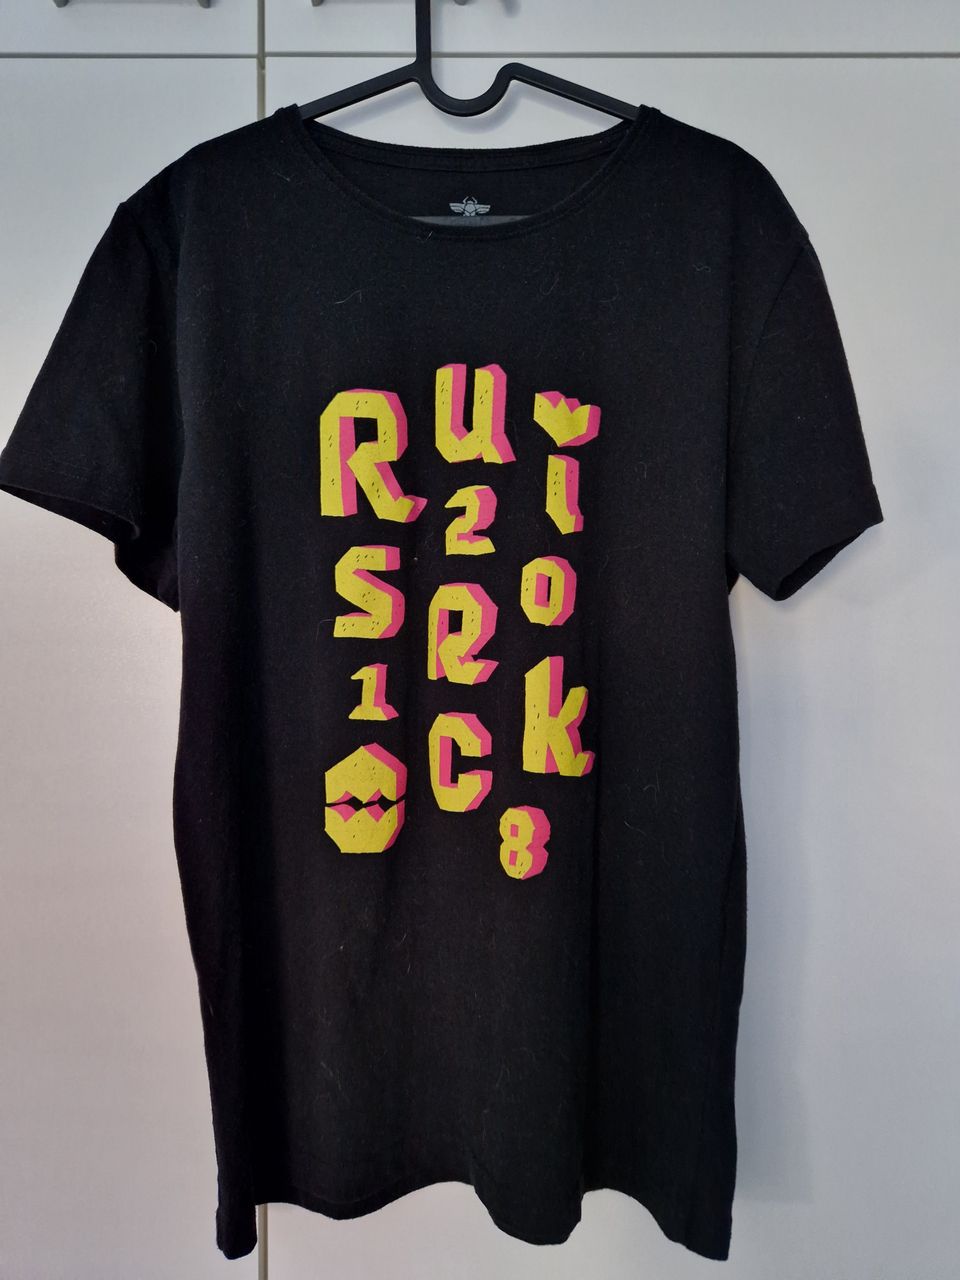 Ruisrock 2018 t-paita, merkki Pure Waste